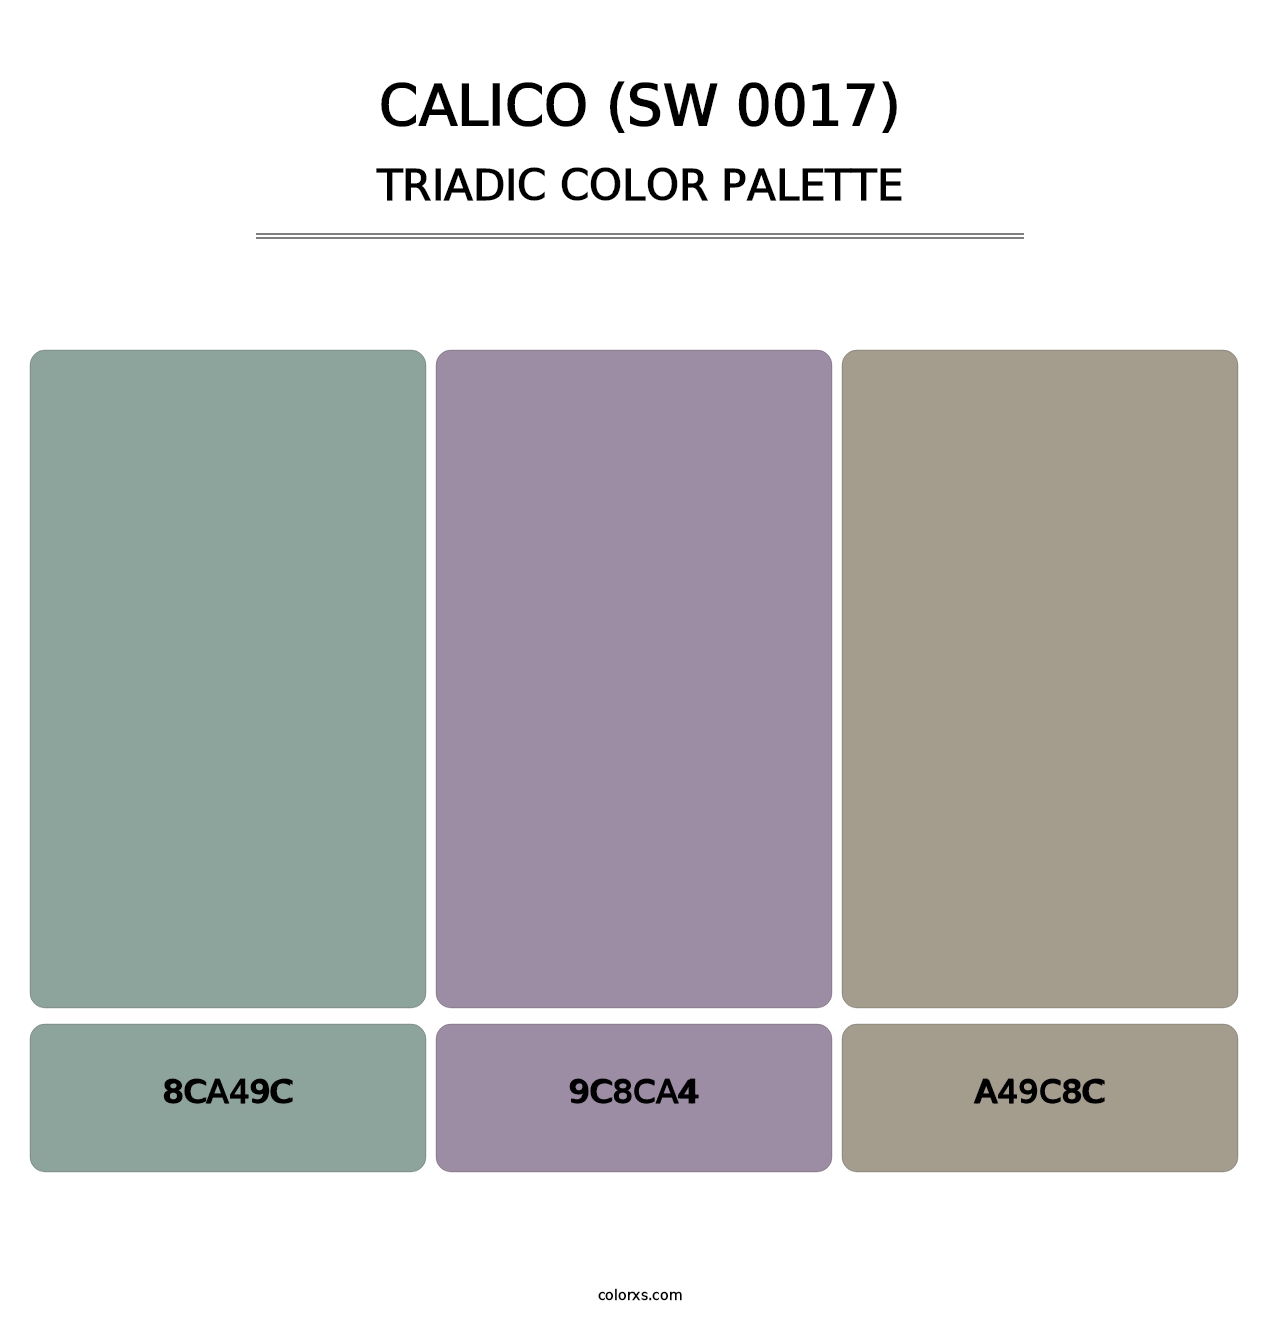 Calico (SW 0017) - Triadic Color Palette